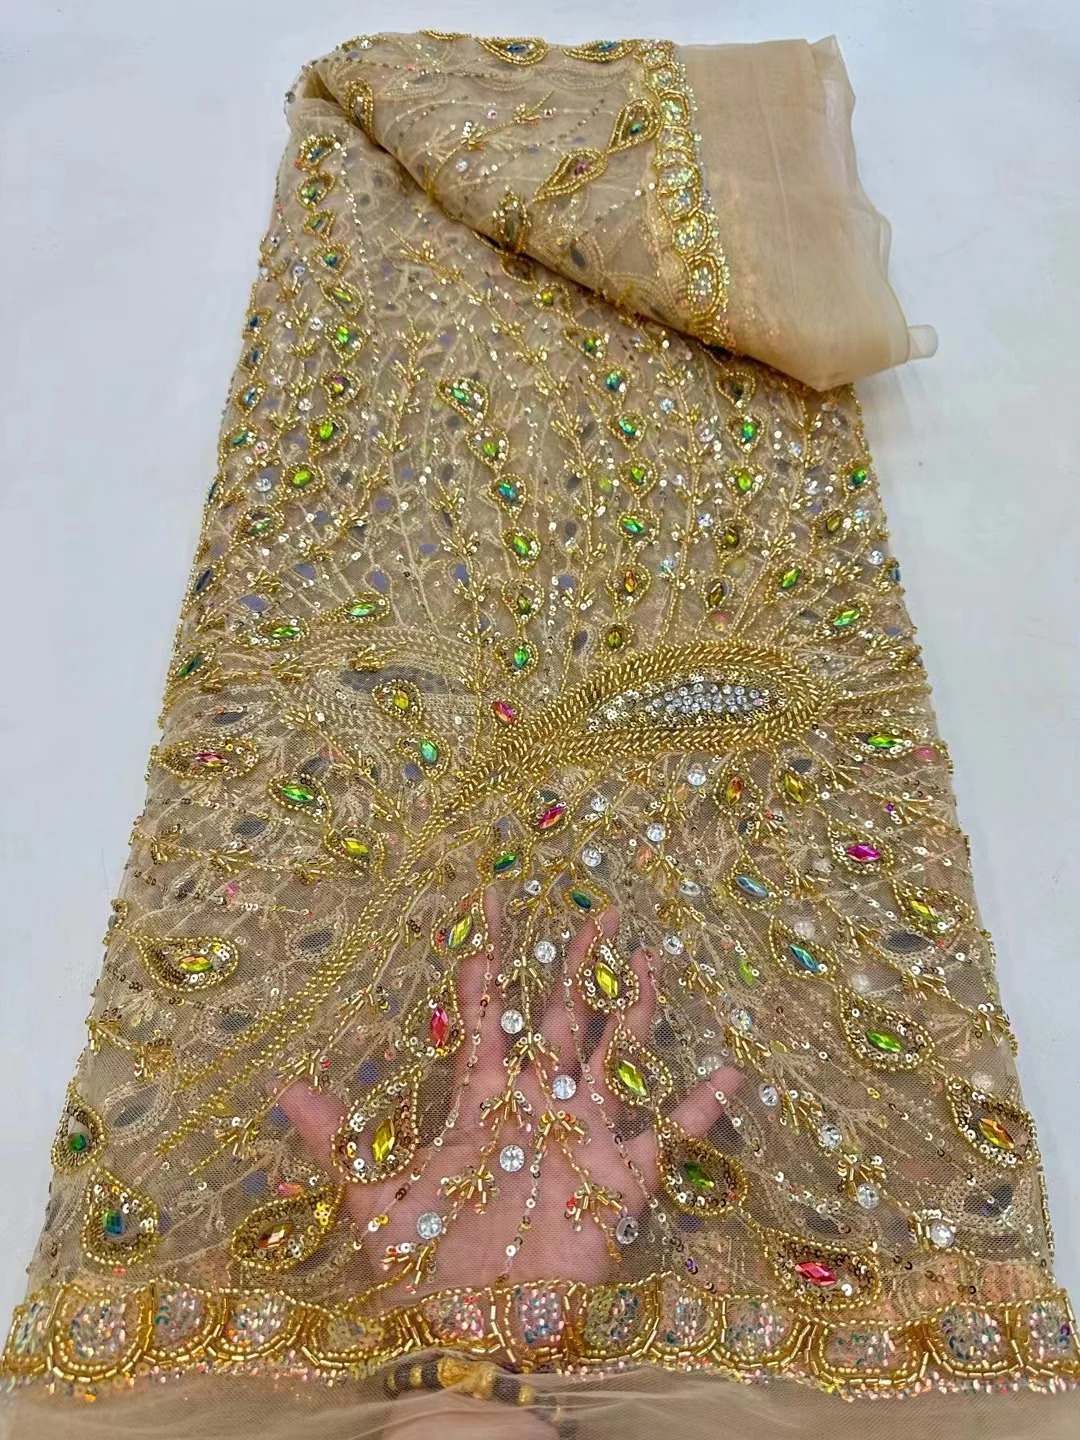 Новая тяжелая промышленность плюс трубка из алмазных бусин павлиньего типа блестящая сетчатая пряжа для вышивки, высококачественный модный национальный сценический костюм